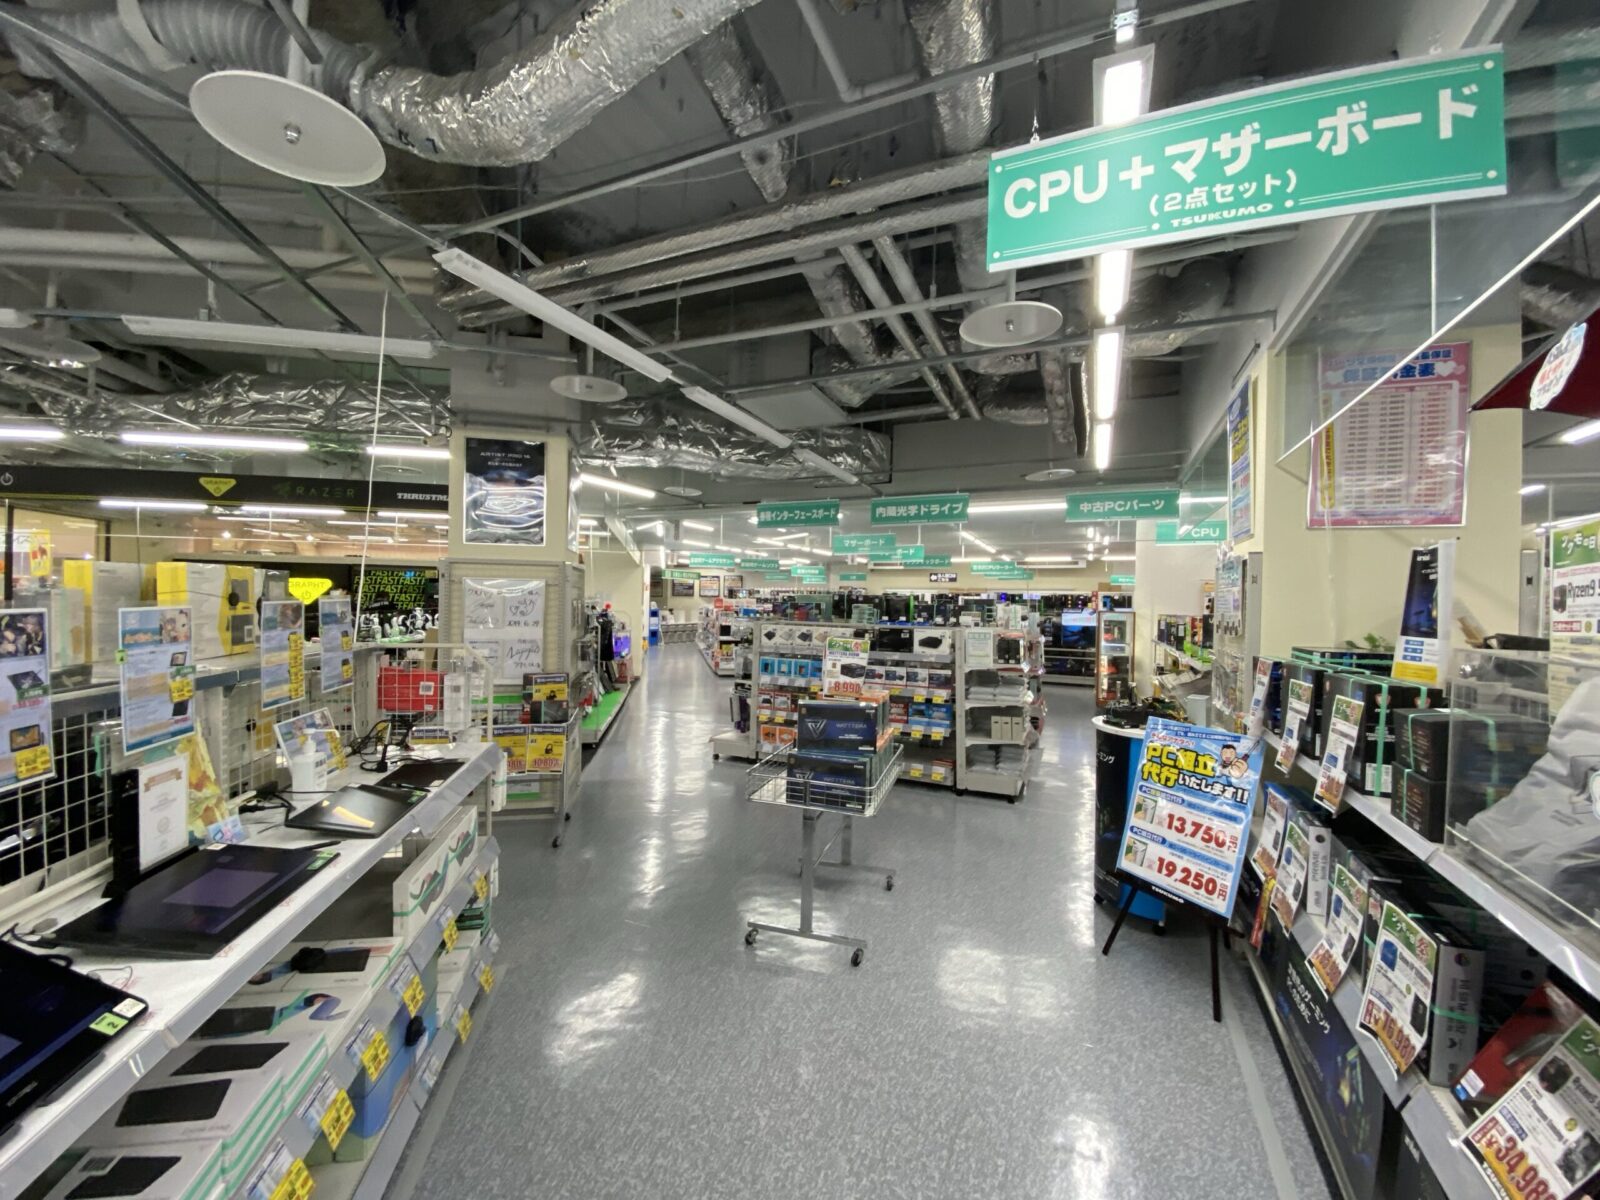 Tsukumo Computer Shop